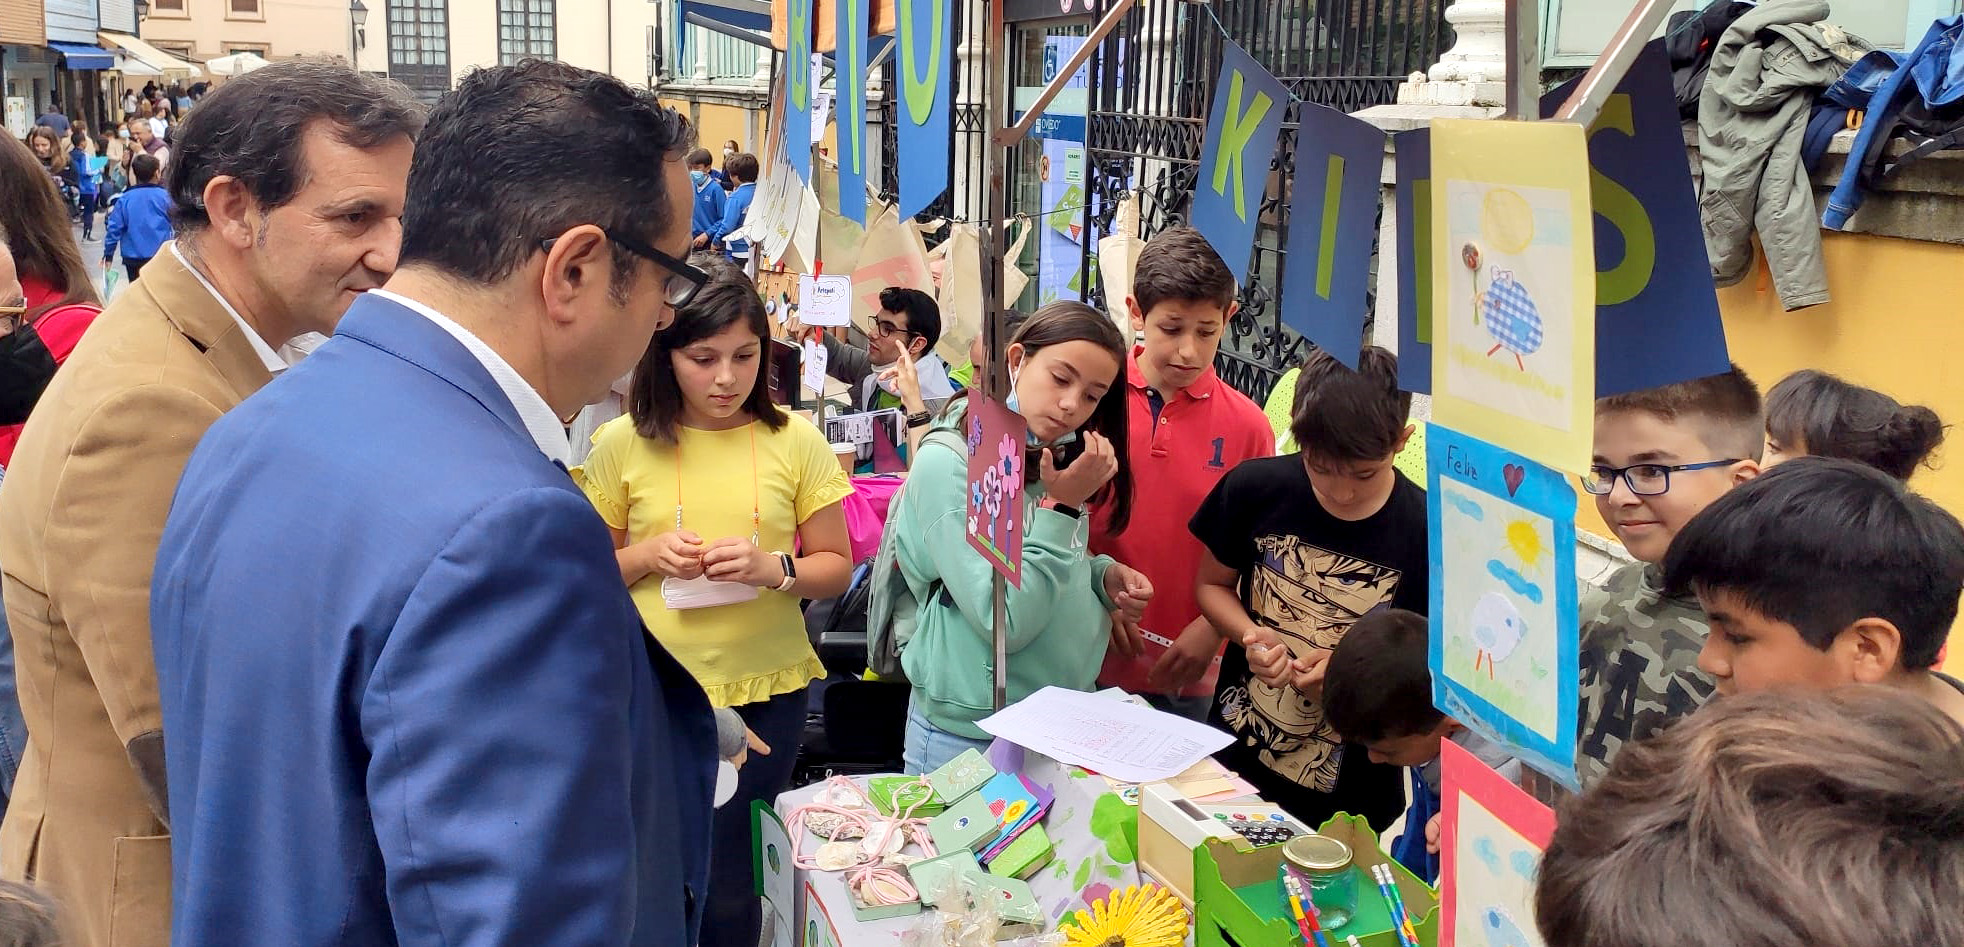 Imagen - Más de 400 estudiantes de once centros participan en Oviedo en el mercado de cooperativas escolares que impulsa Valnalón